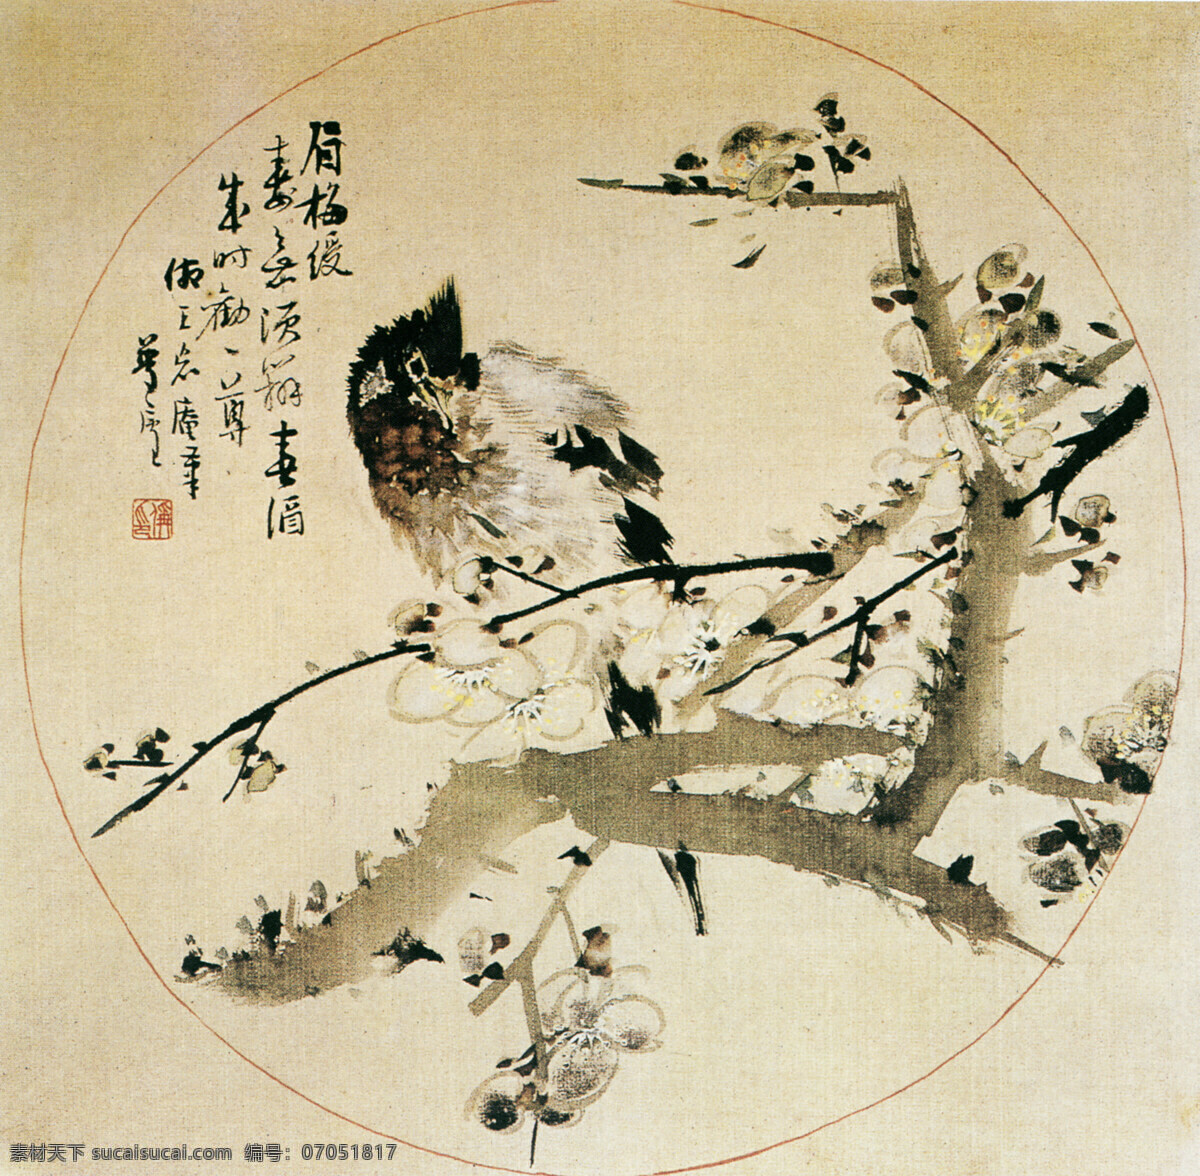 中国 名画 古画 广告 大 辞典 国画 绘画 水墨 有名 中国名画 著名 文化艺术